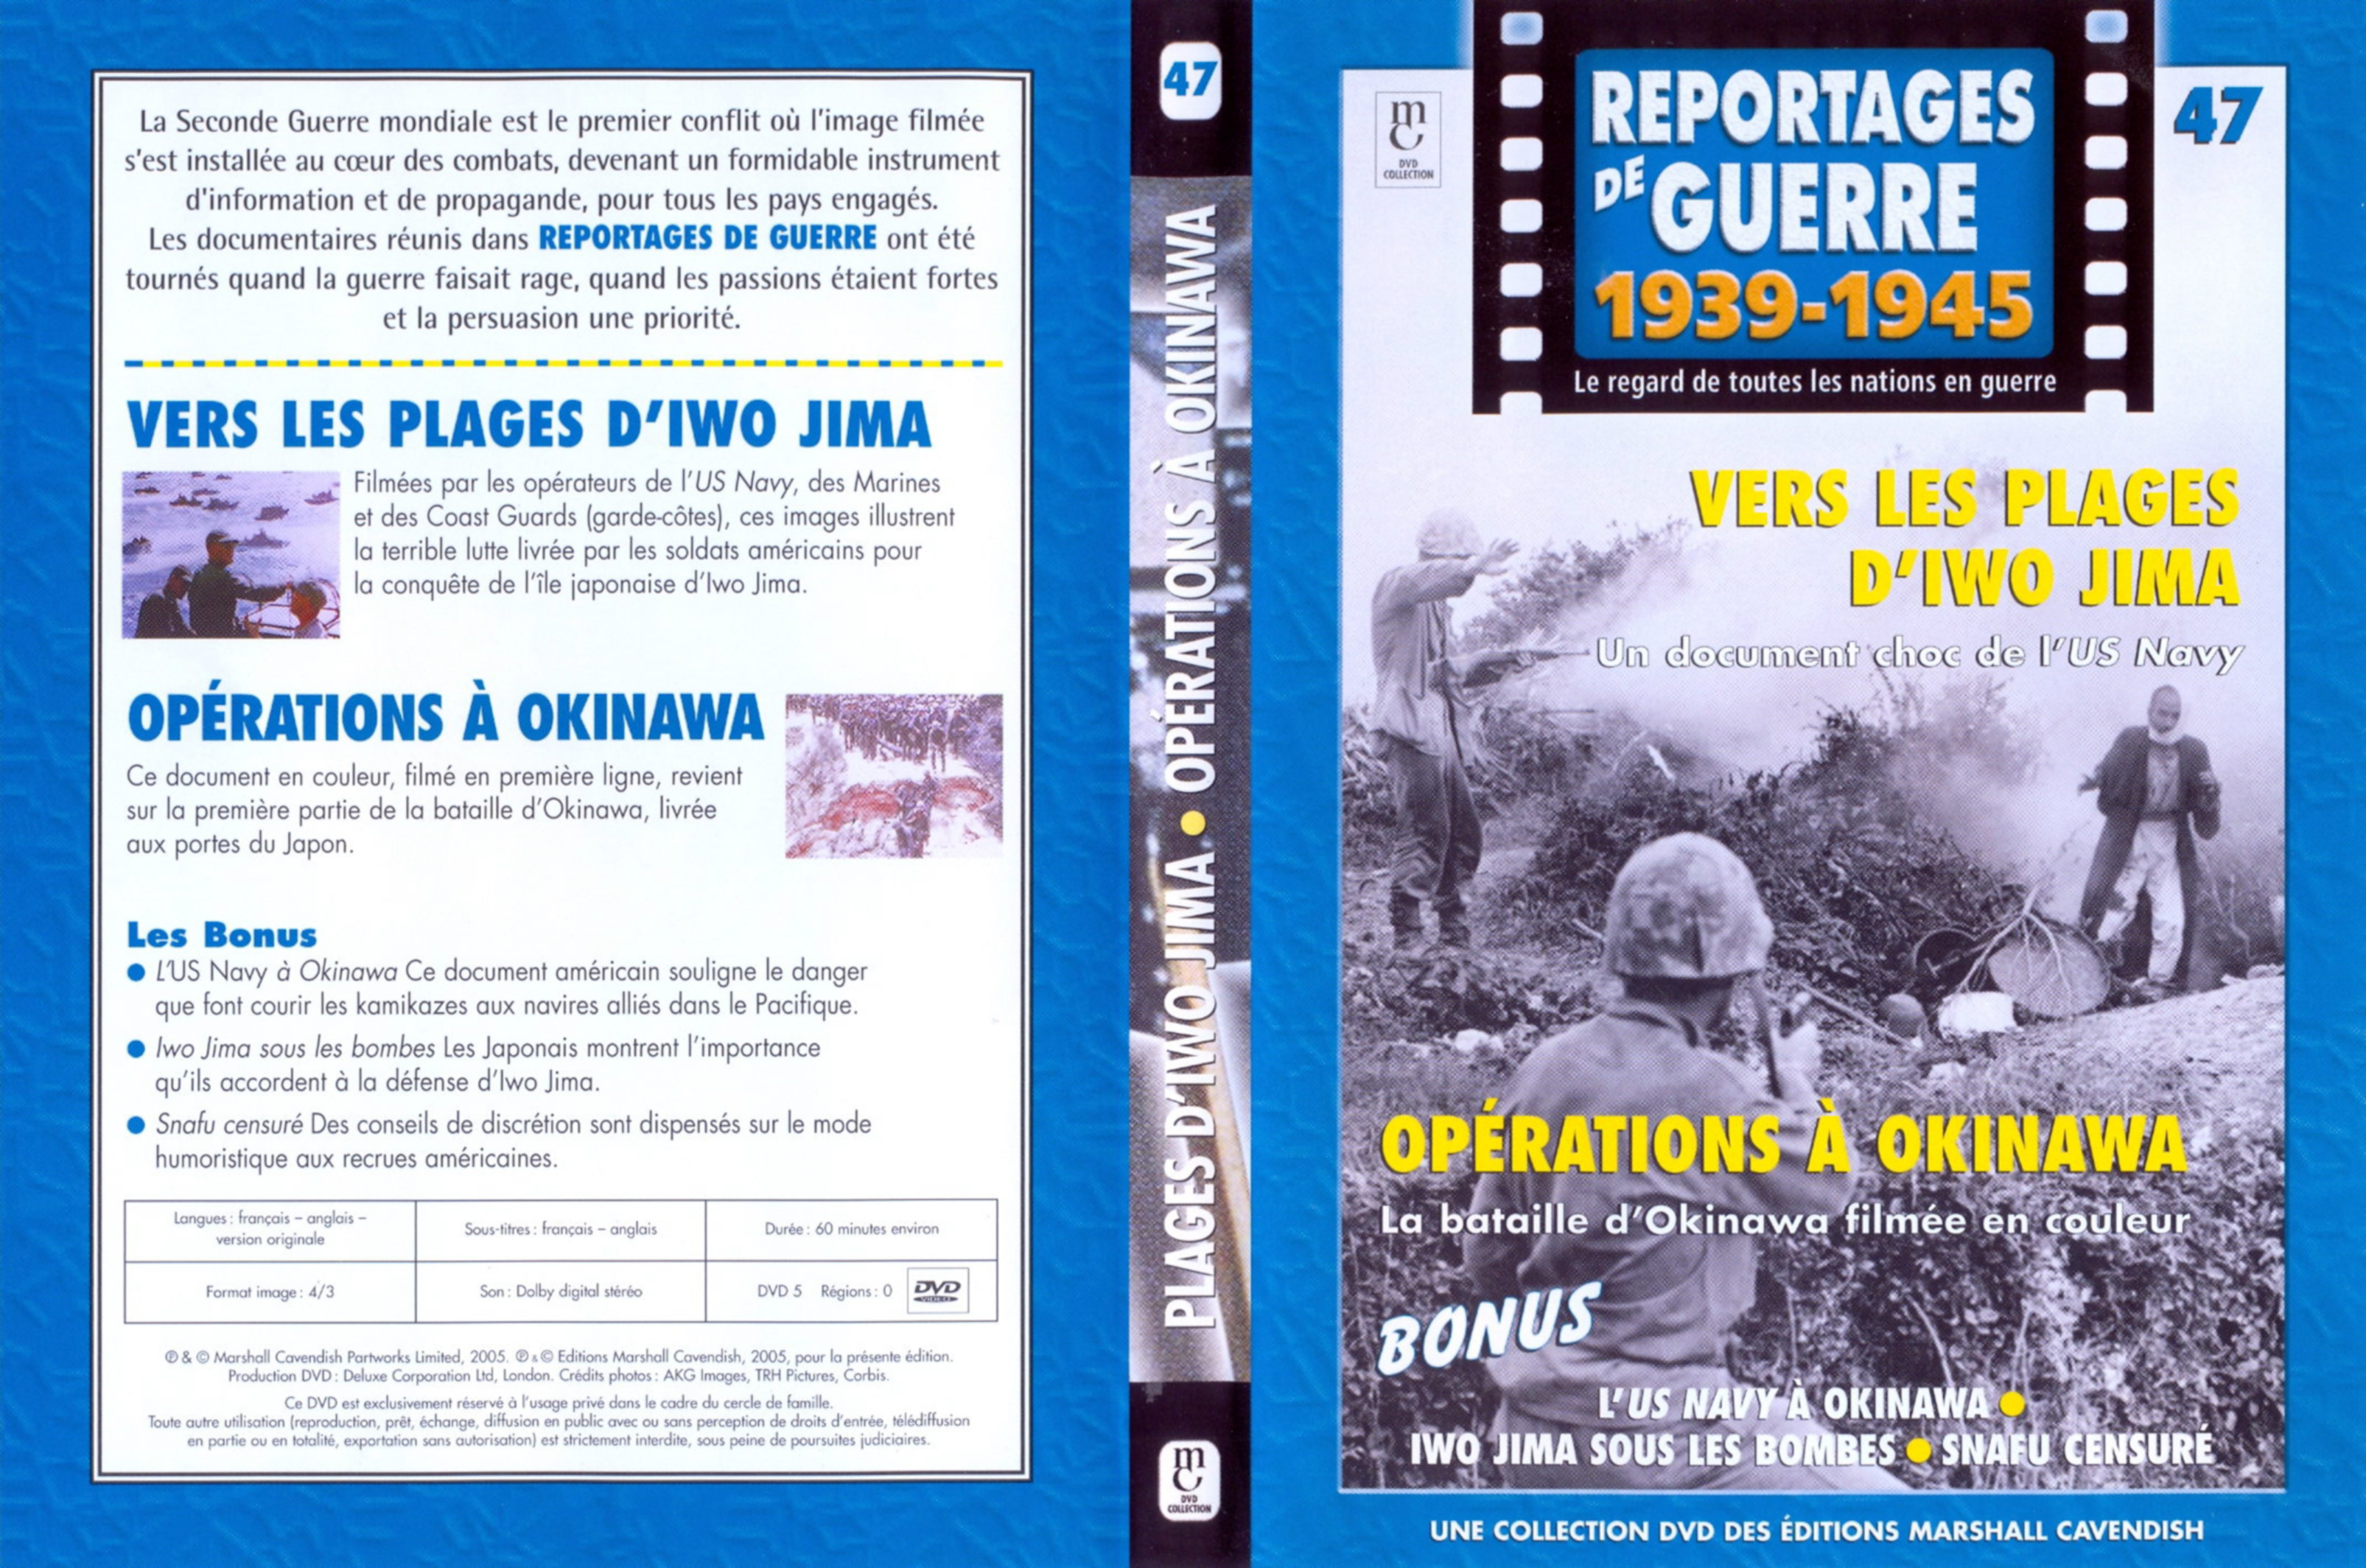 Jaquette DVD Reportages de guerre vol 47